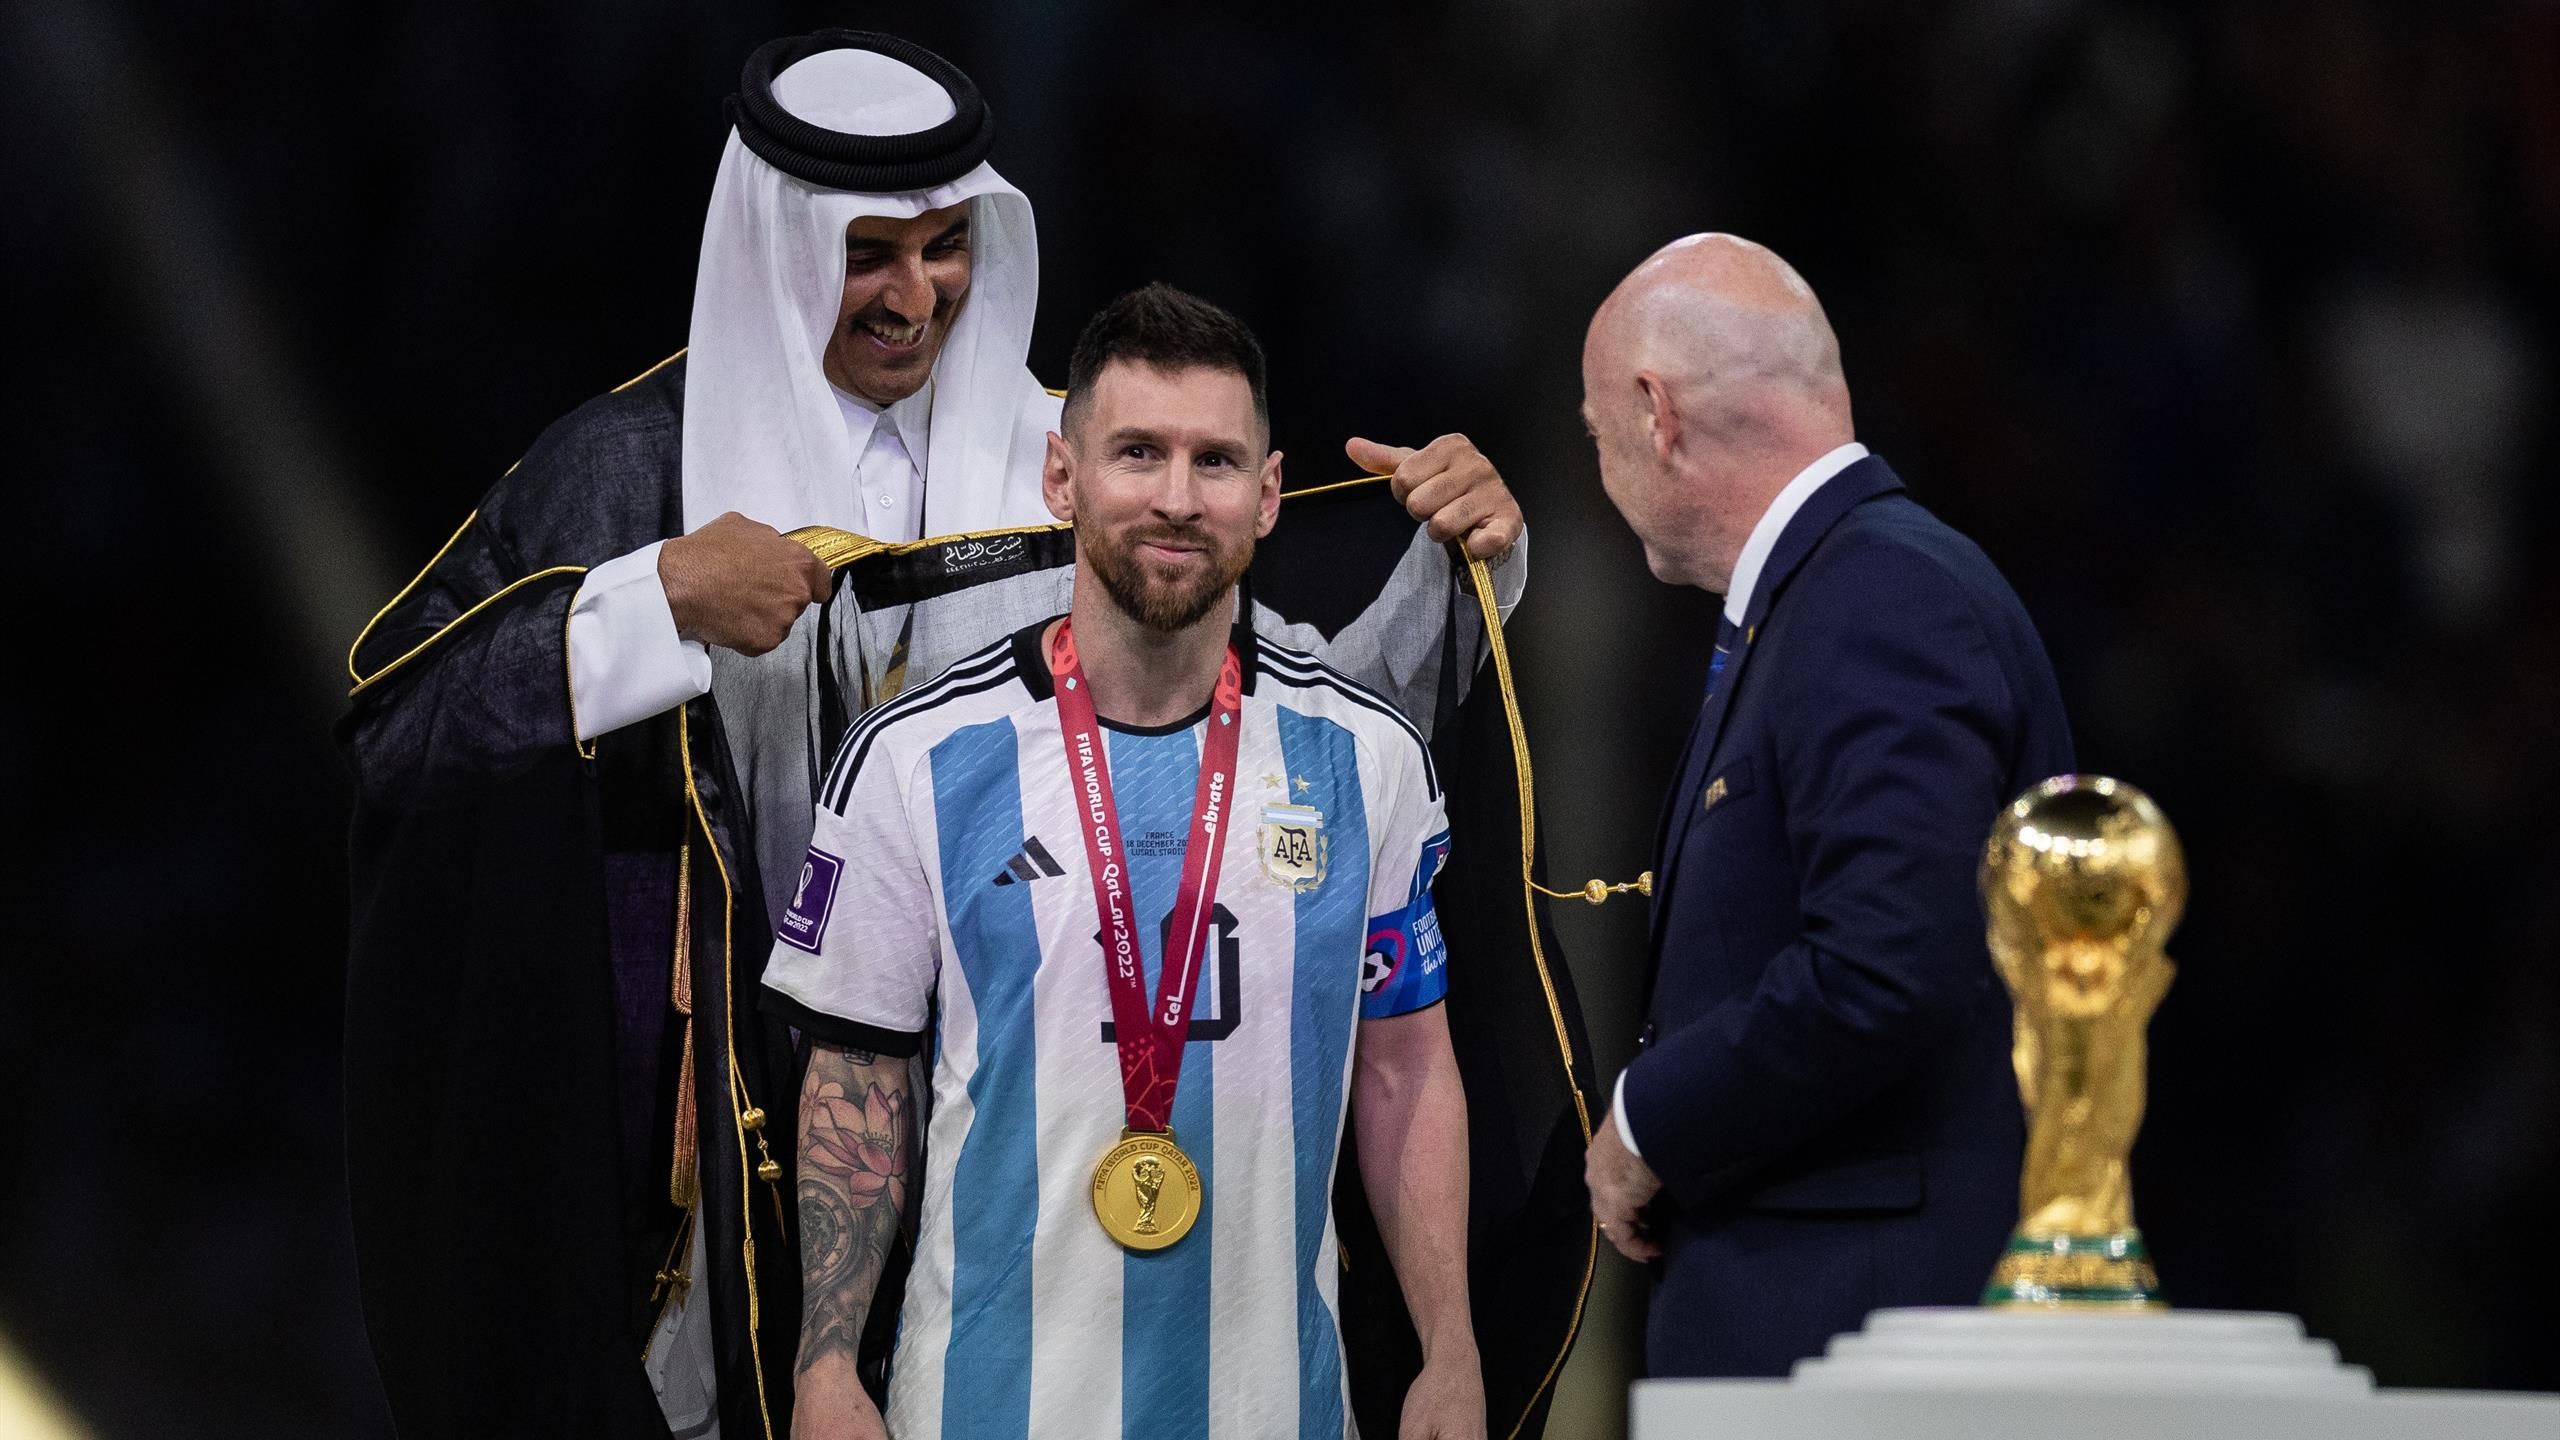 arapski ogrtač Messi je podigao trofej umotan u arapski ogrtač Infantino katarski emit messi trofej na stadionu